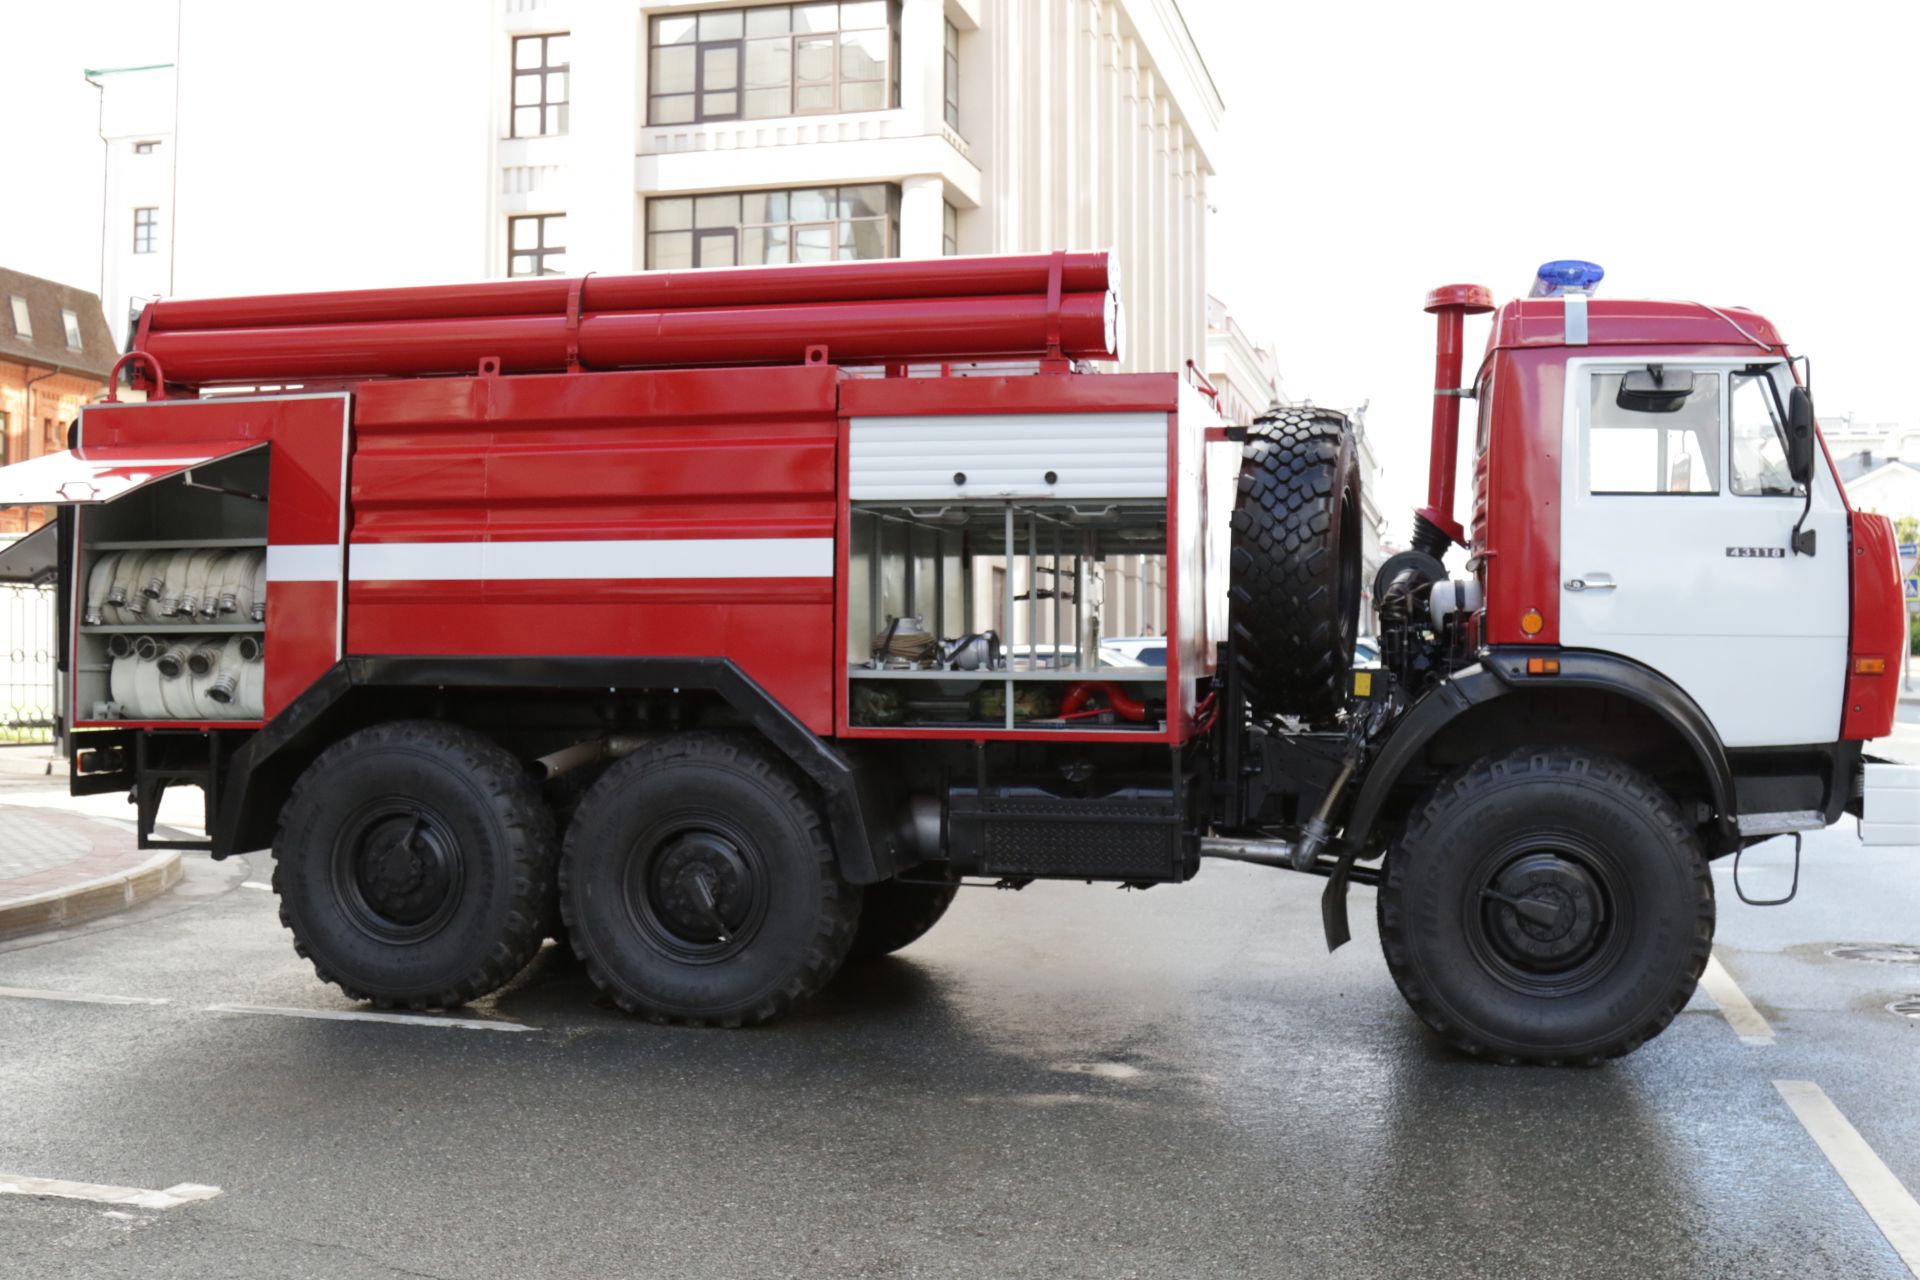 Минниханову презентовали обновленную по программе капремонта пожарную машину